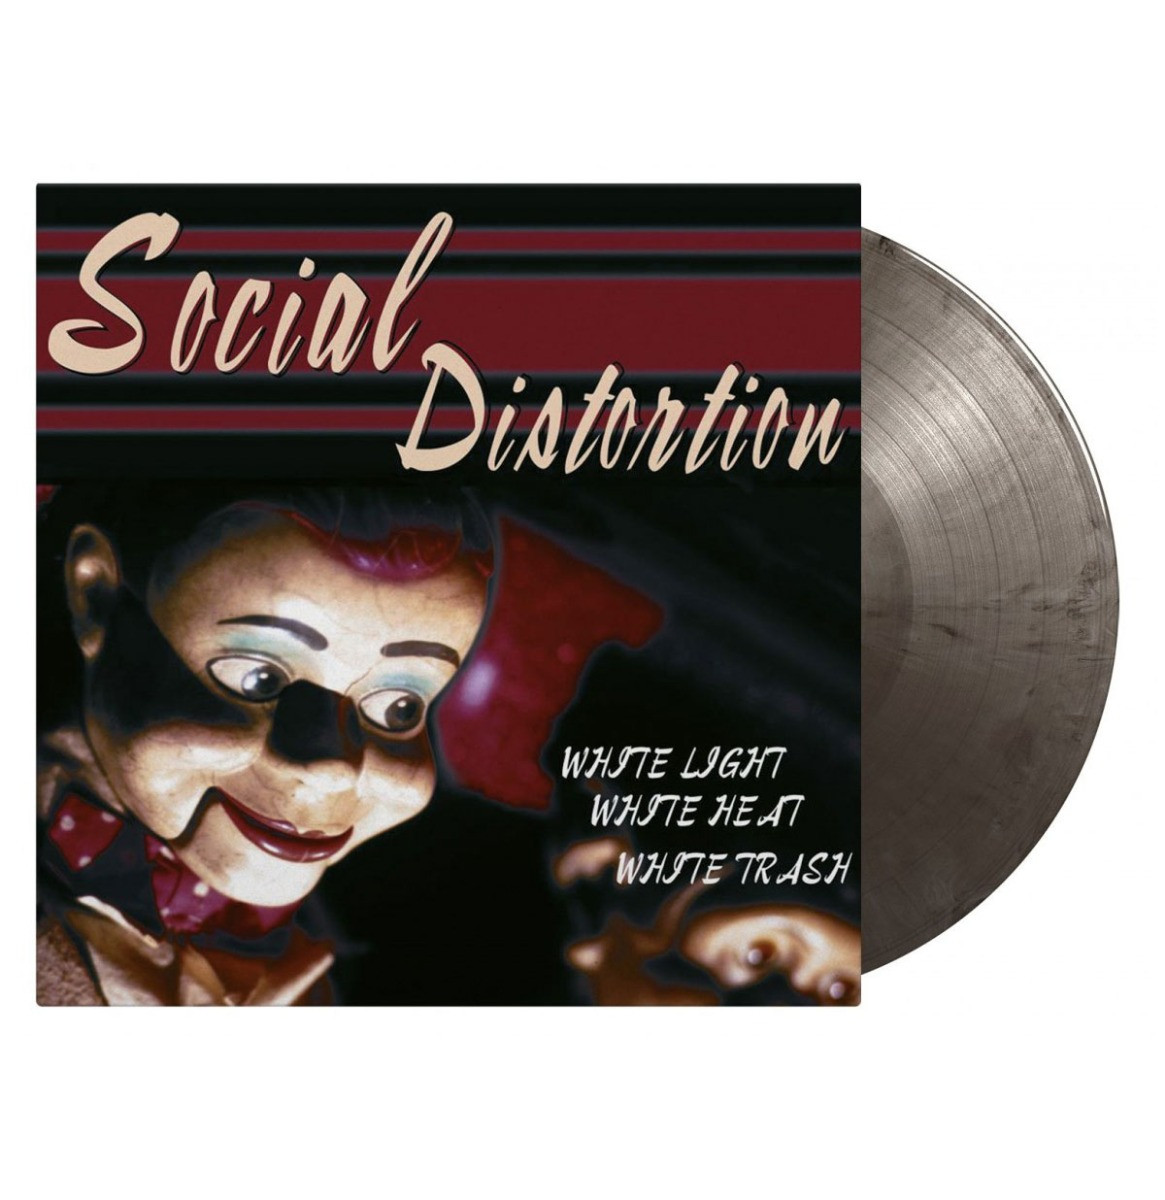 Social Distortion - White Light White Heat White Trash LP - Colored Vinyl